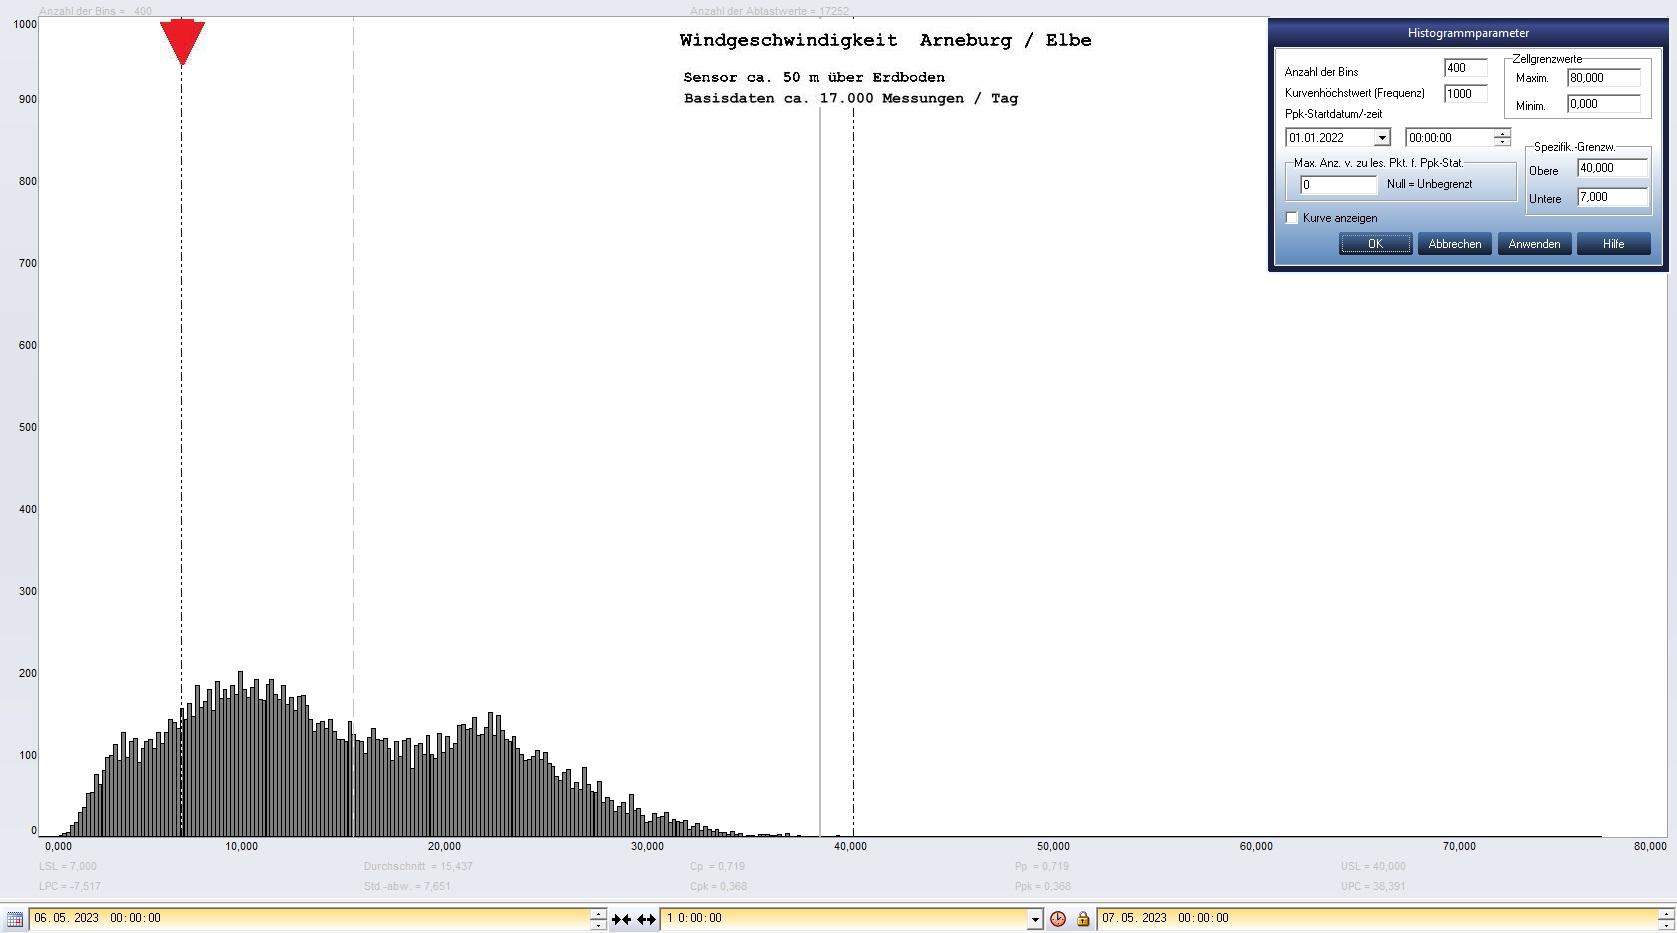 Arneburg Tages-Histogramm Winddaten, 06.05.2023
  Histogramm, Sensor auf Gebude, ca. 50 m ber Erdboden, Basis: 5s-Aufzeichnung